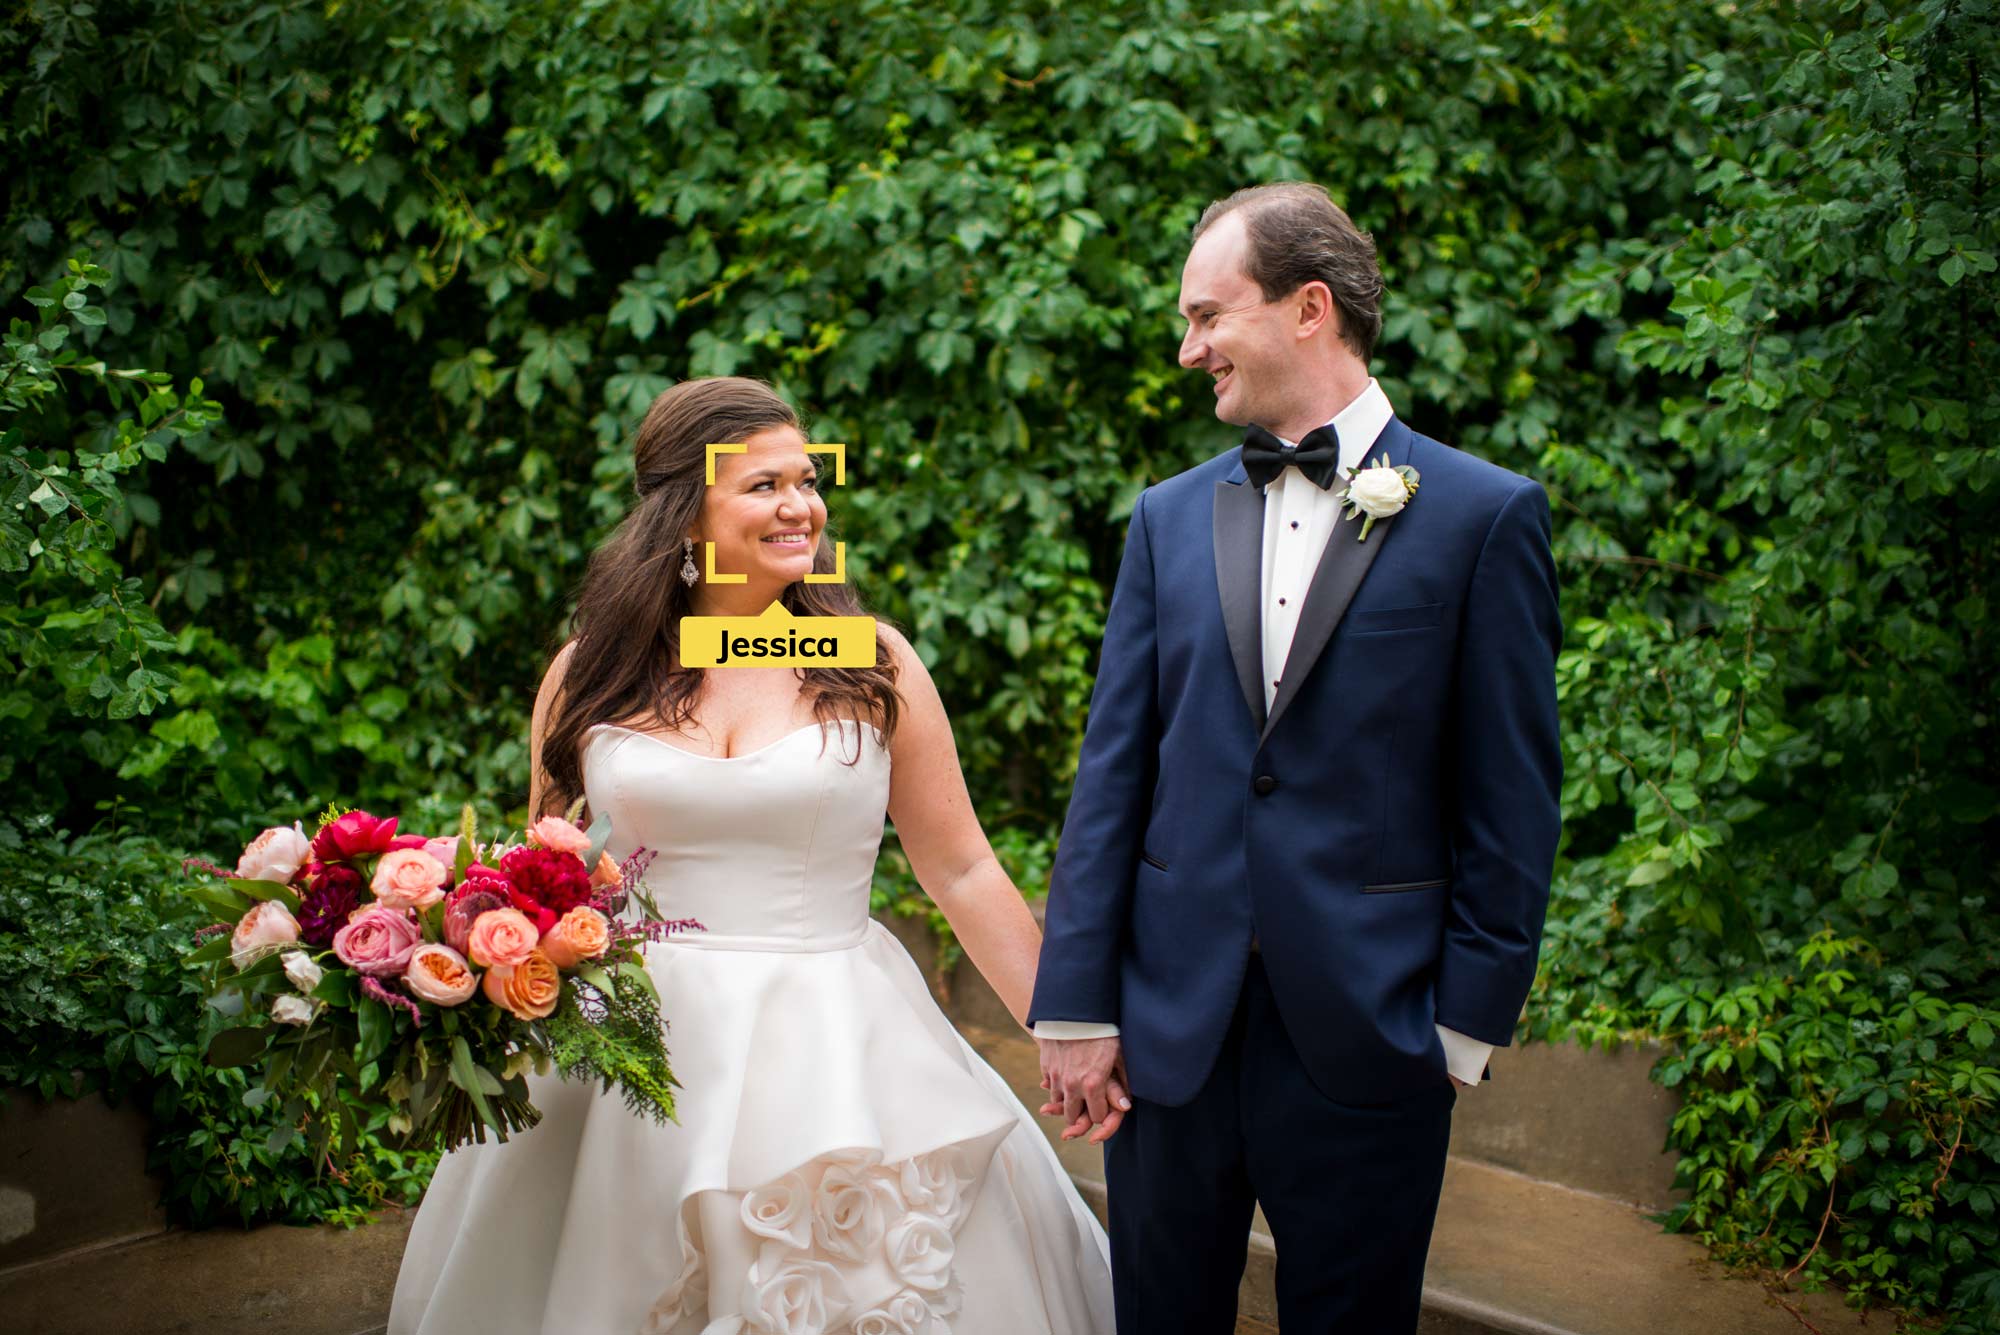 New Wedding Photo App Takes Over Disposable Cameras - Waldo Photos